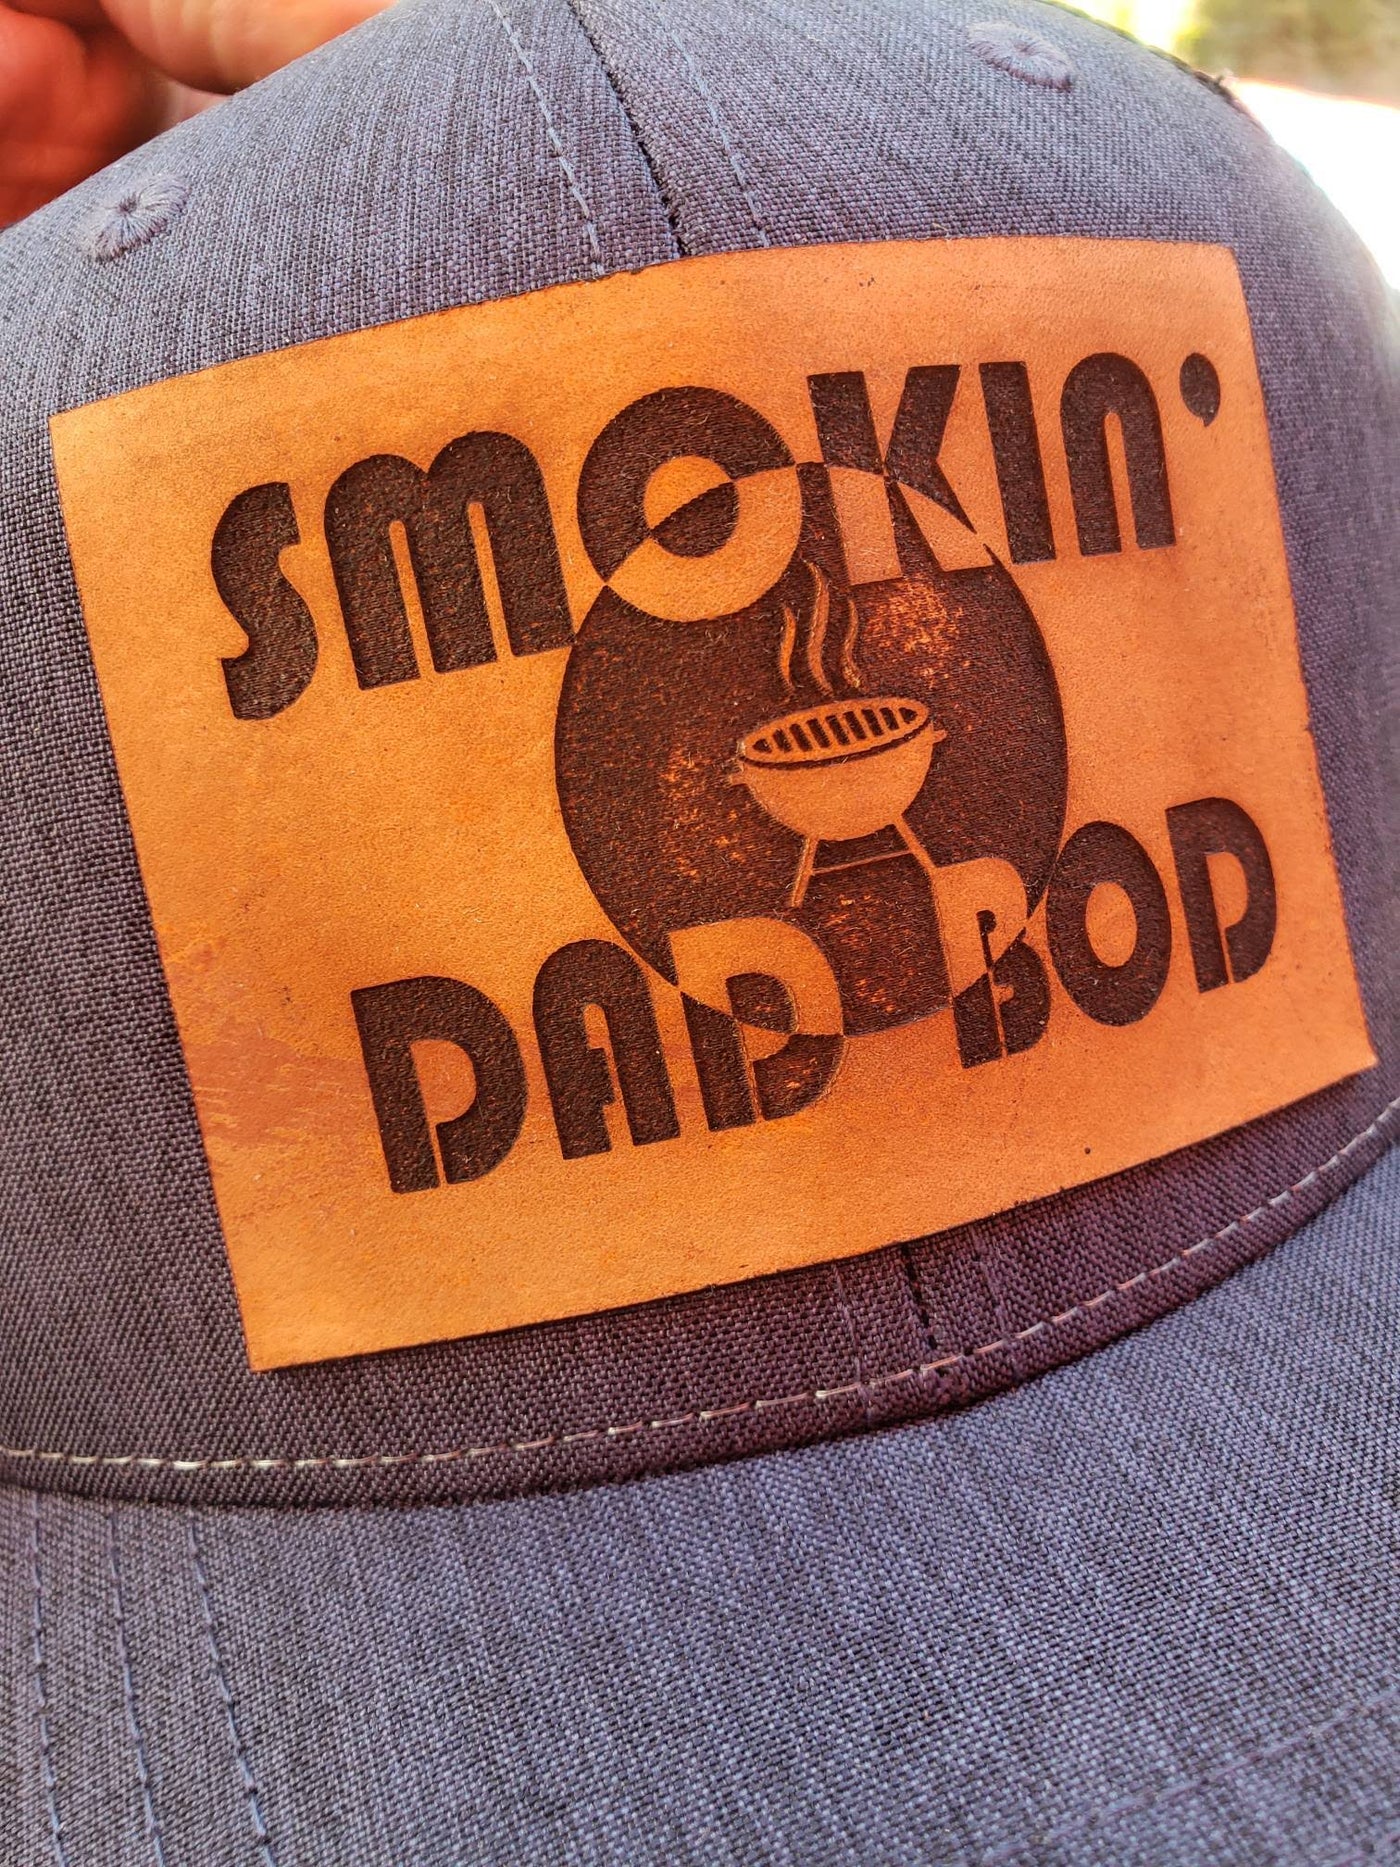 Smokin' Dad Bod (Hat)